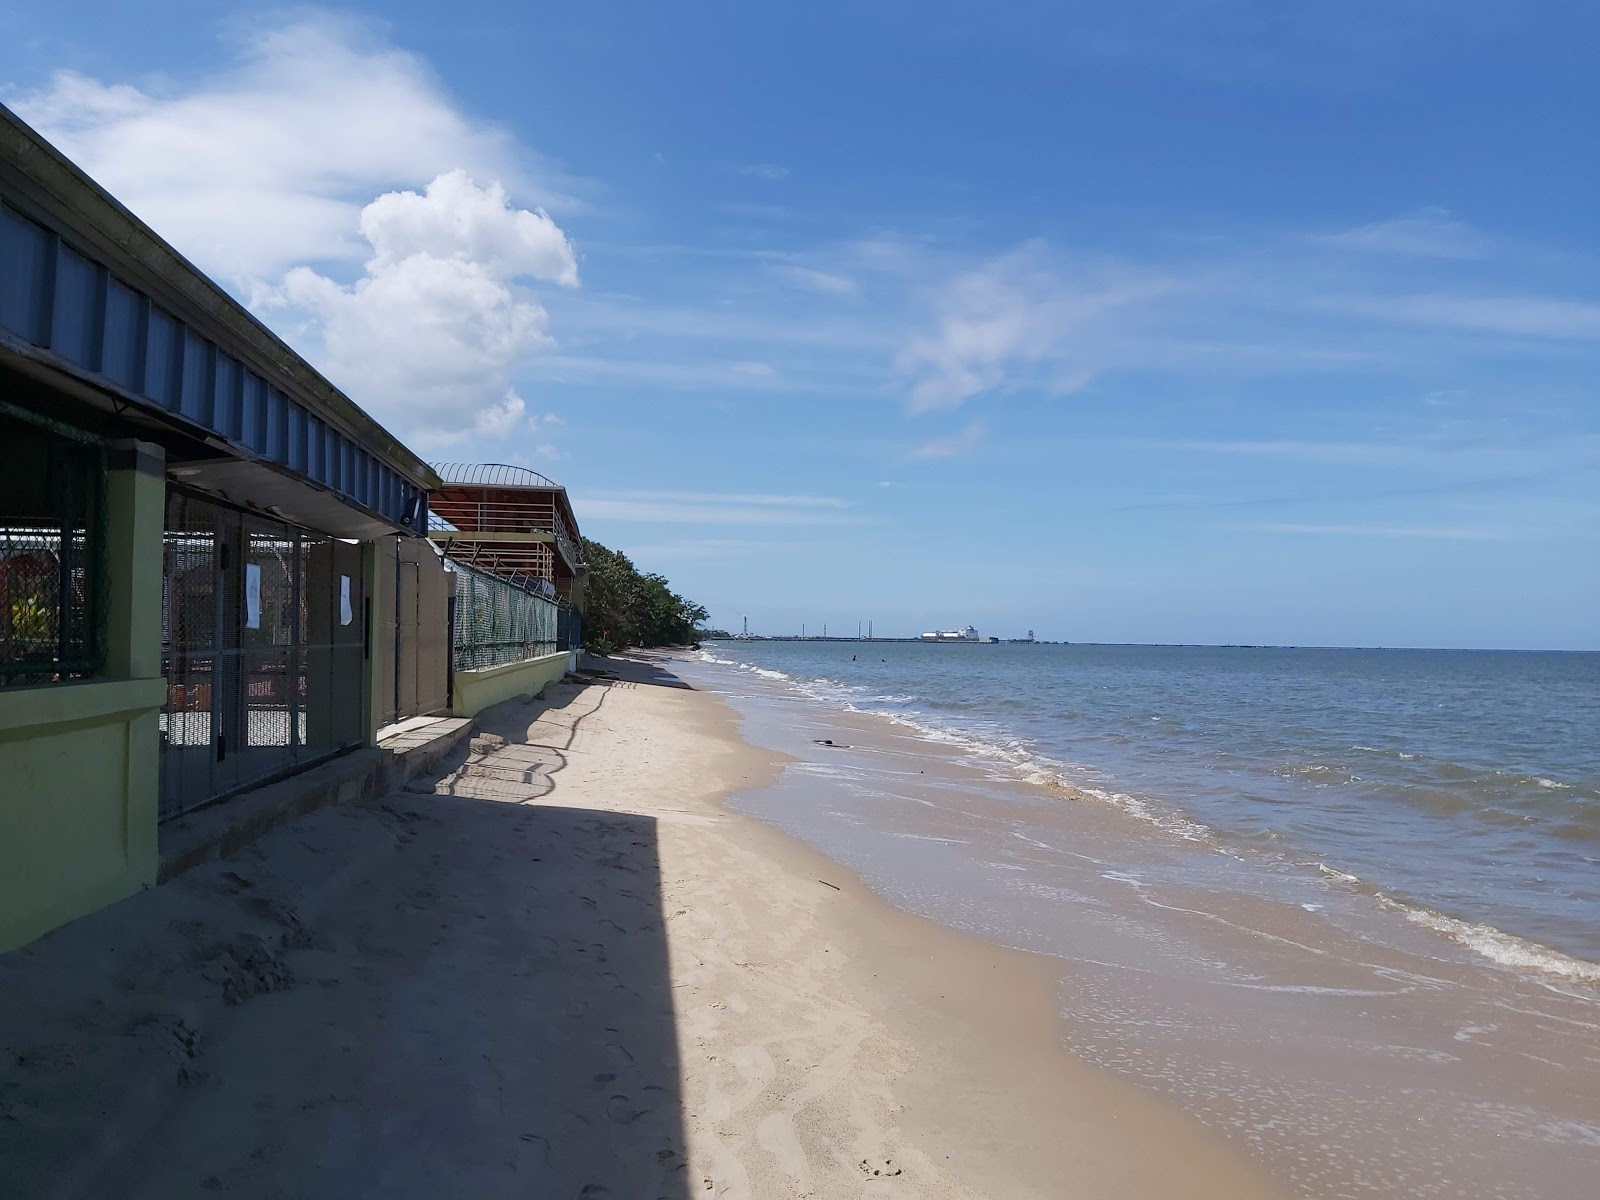 Clifton Hill beach'in fotoğrafı geniş plaj ile birlikte